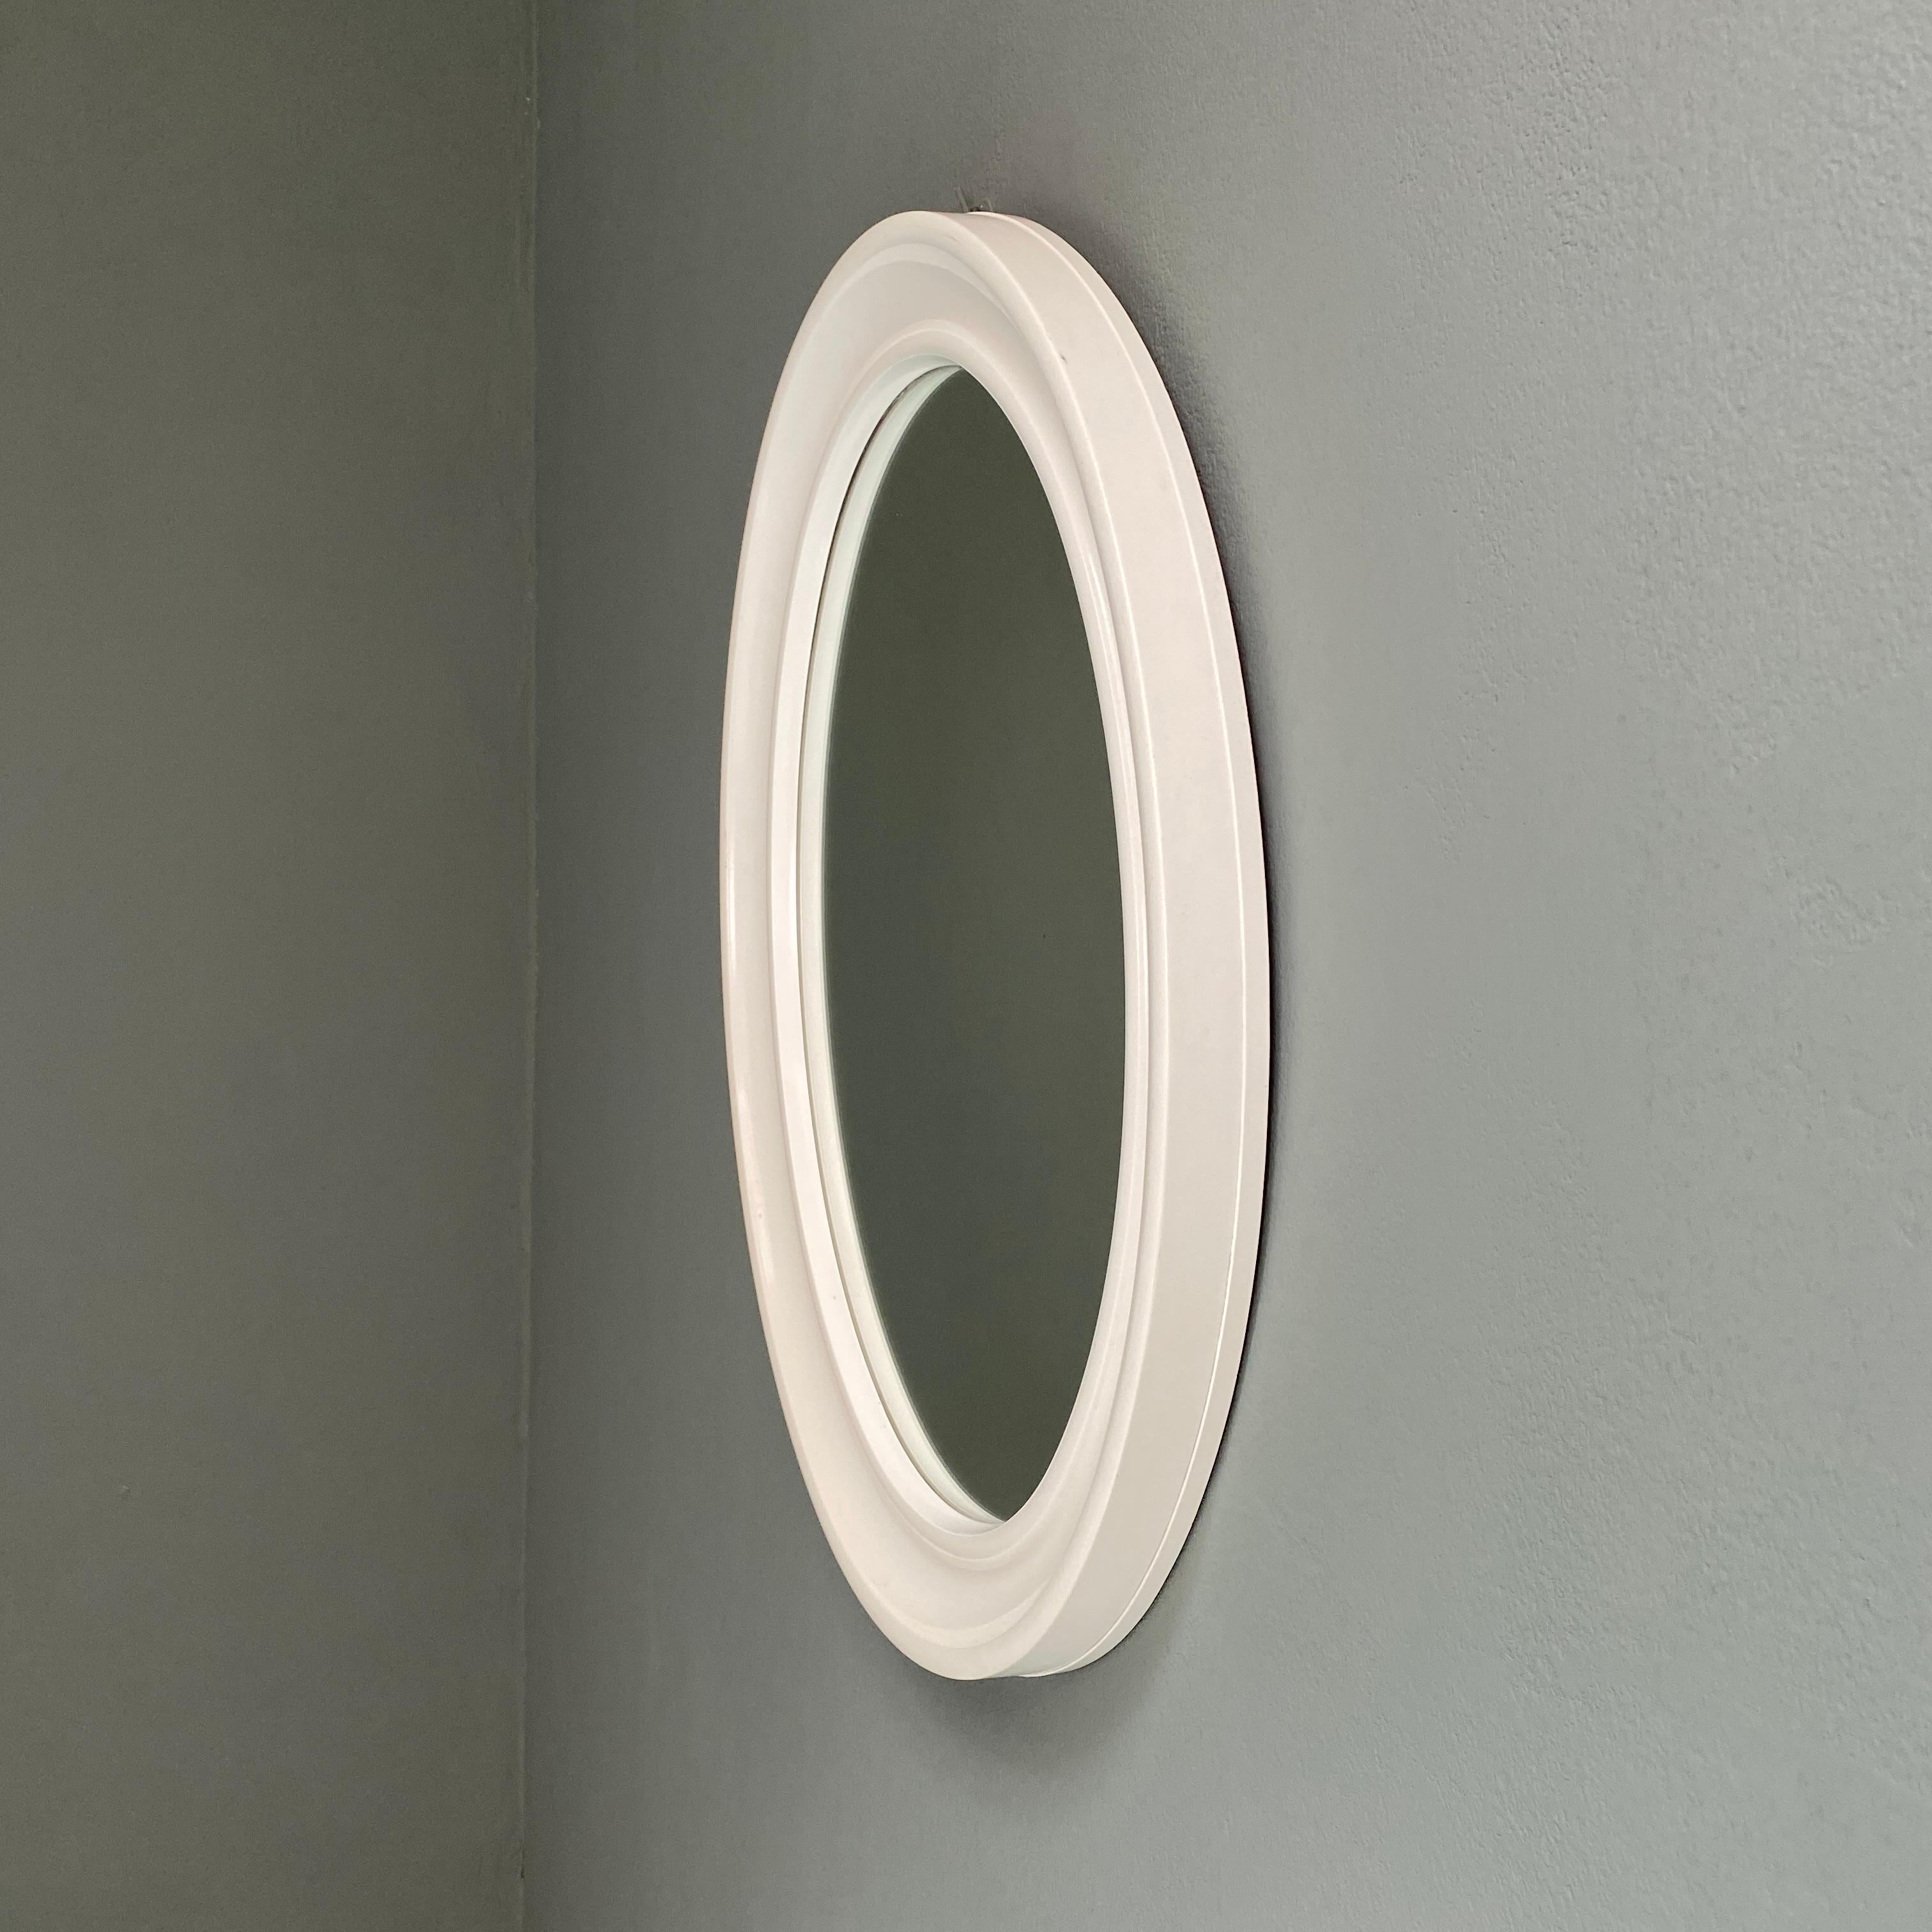 Modern Oval White Plastic Mirror by Carrara & Matta, 1980s For Sale 4